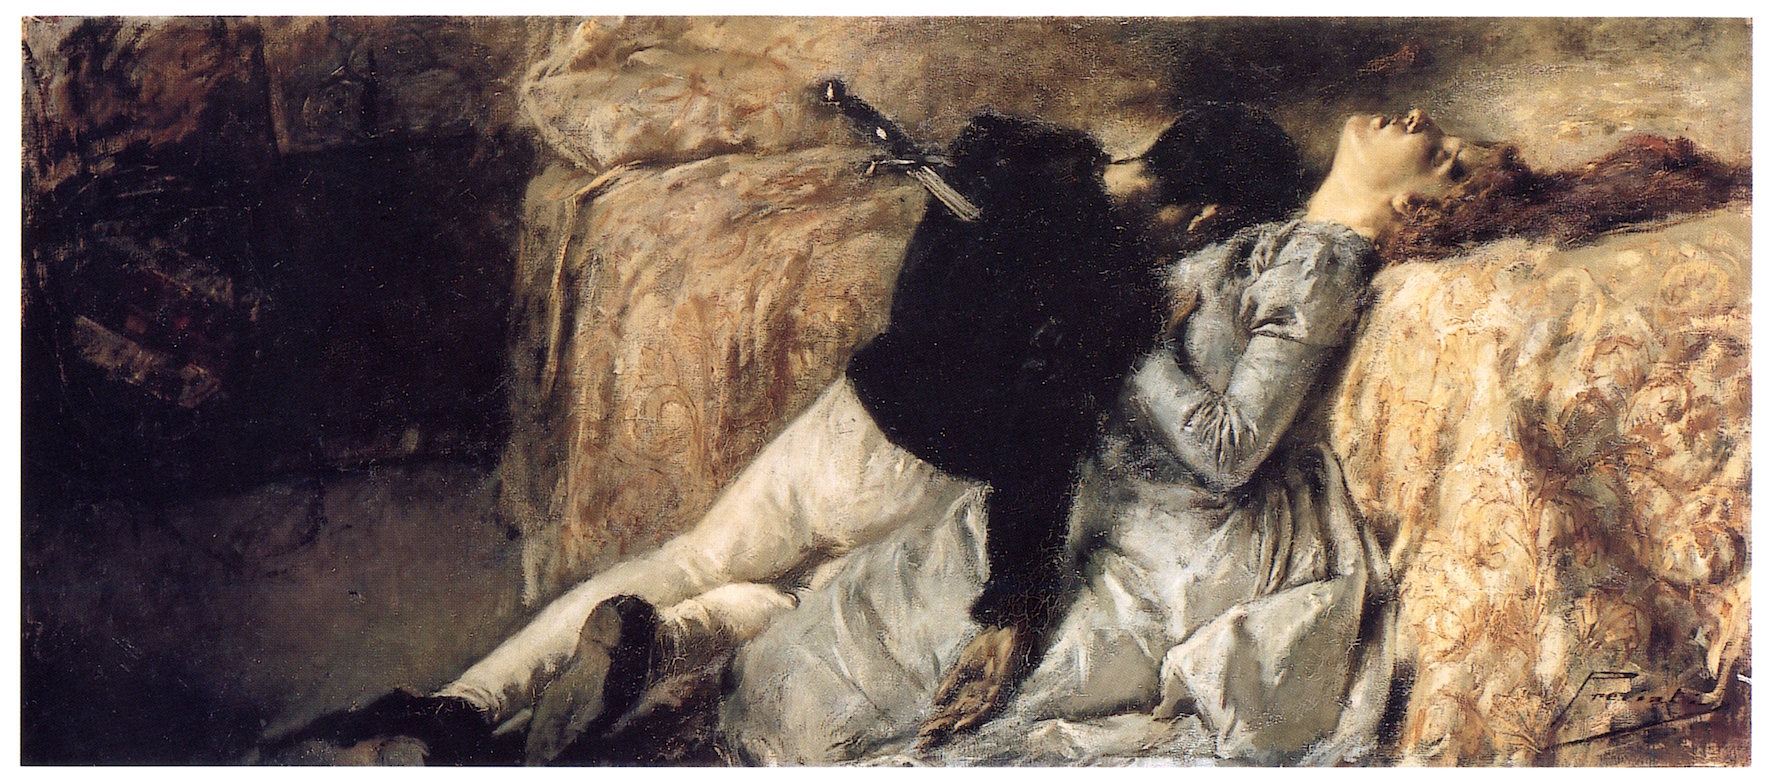   Gaetano Previati, Paolo e Francesca, 1887